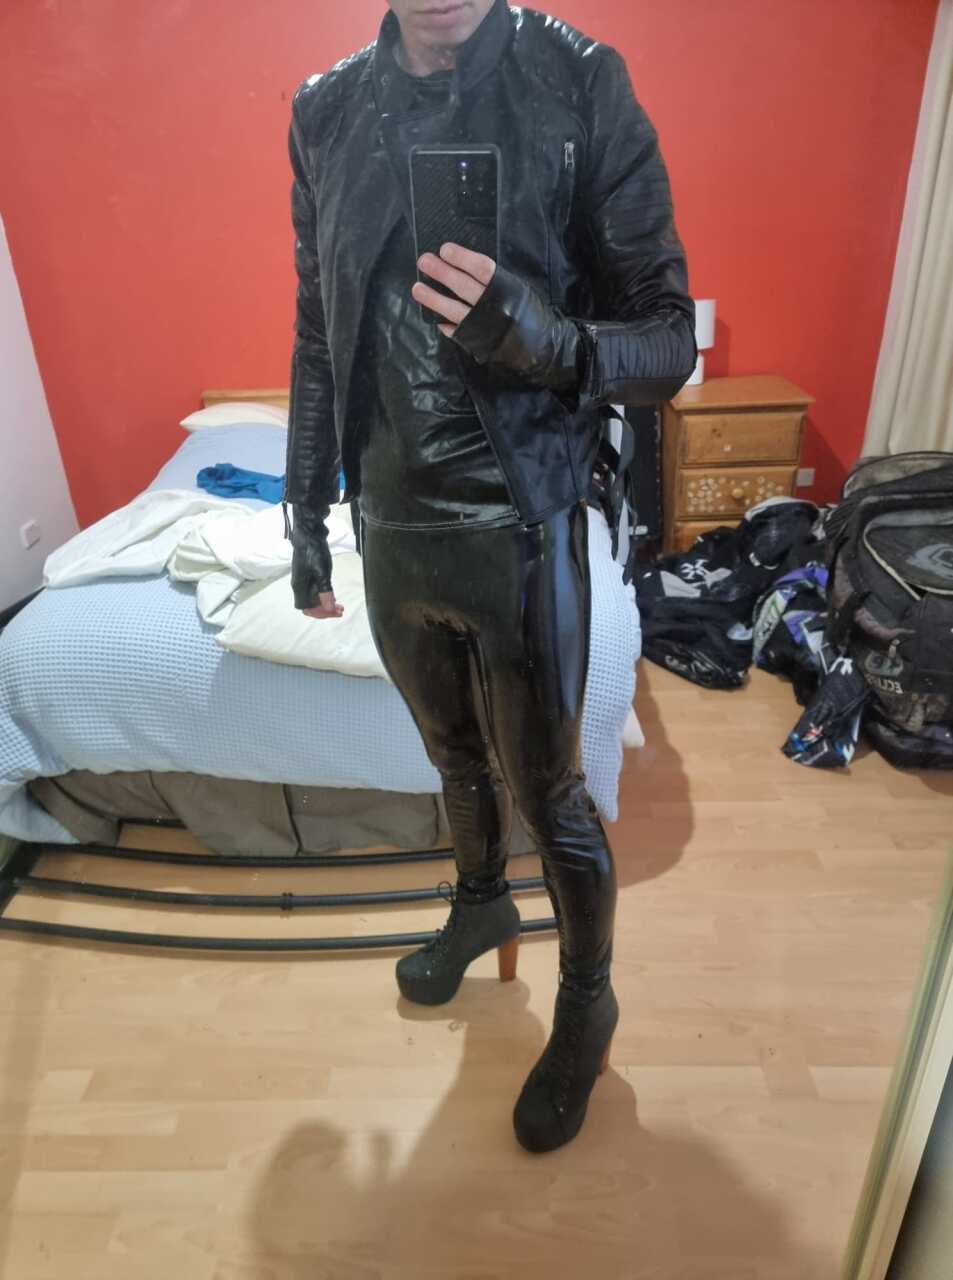 i like leather